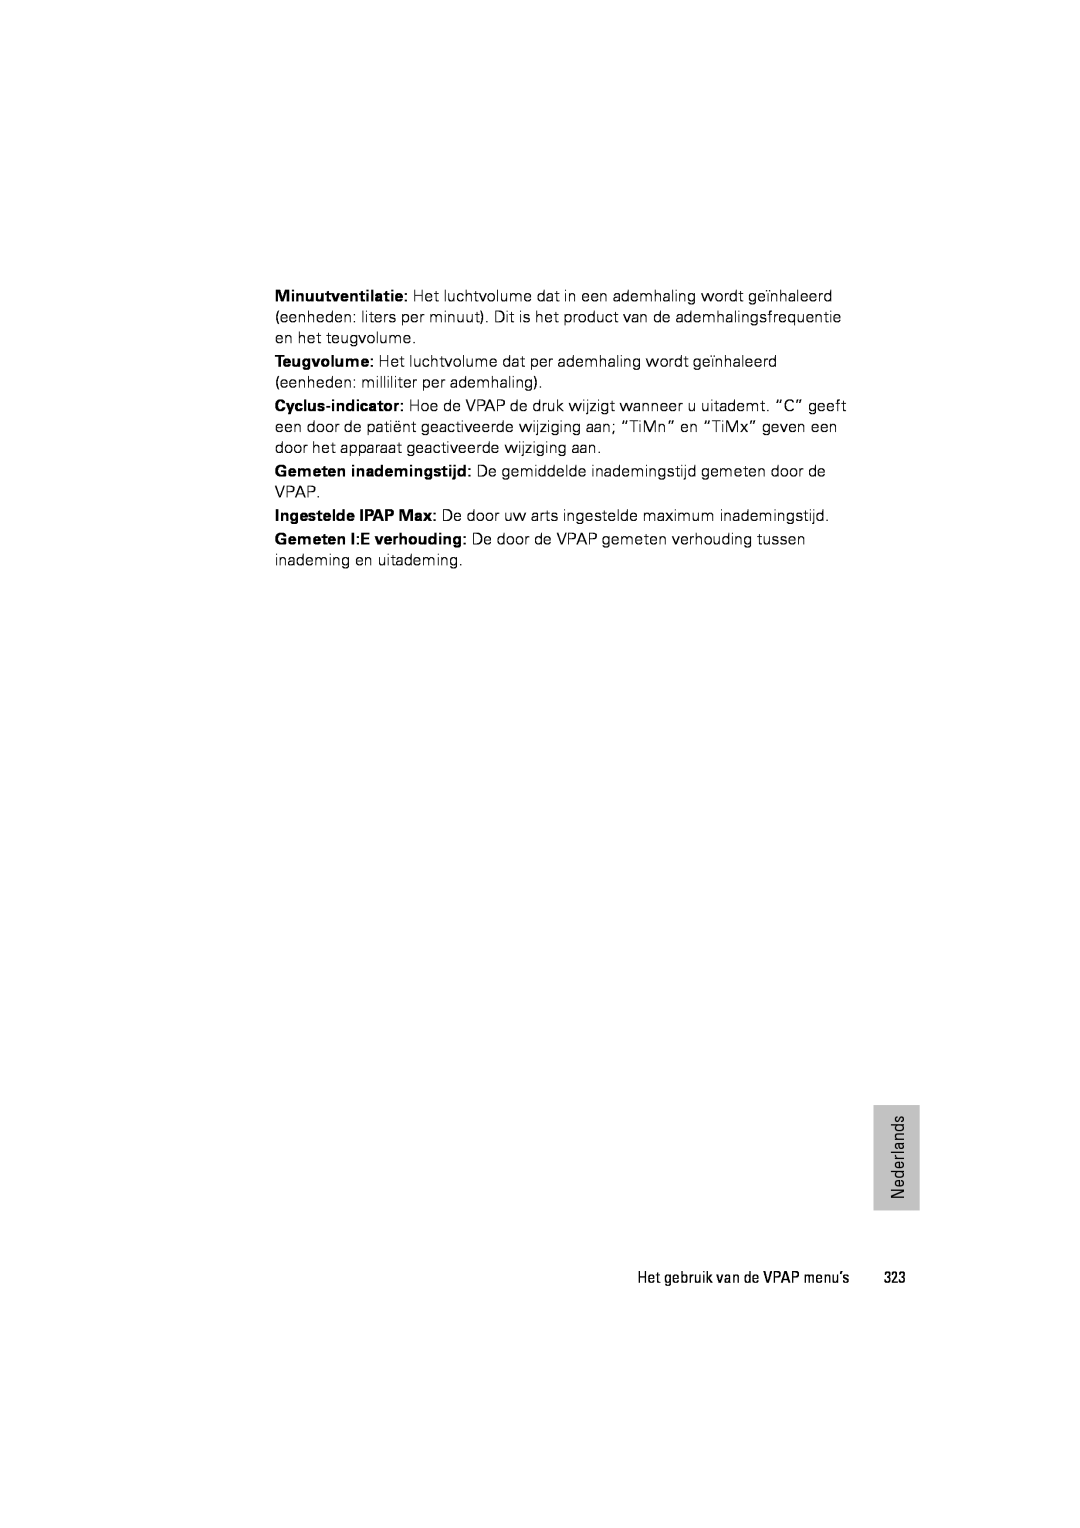 ResMed III & III ST user manual eenheden: milliliter per ademhaling 